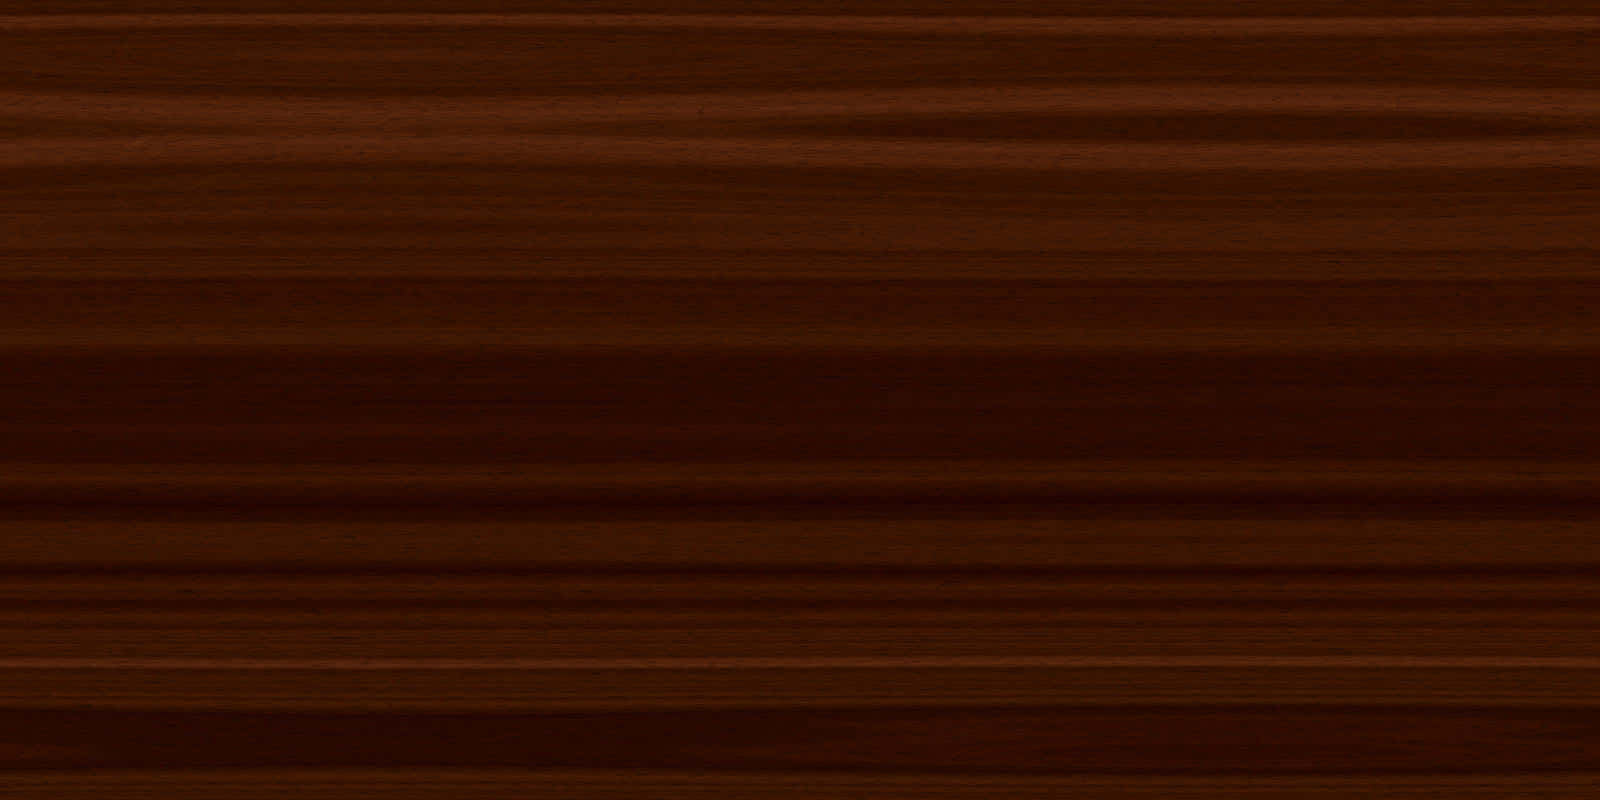 Dark Wood Background Brown Shades